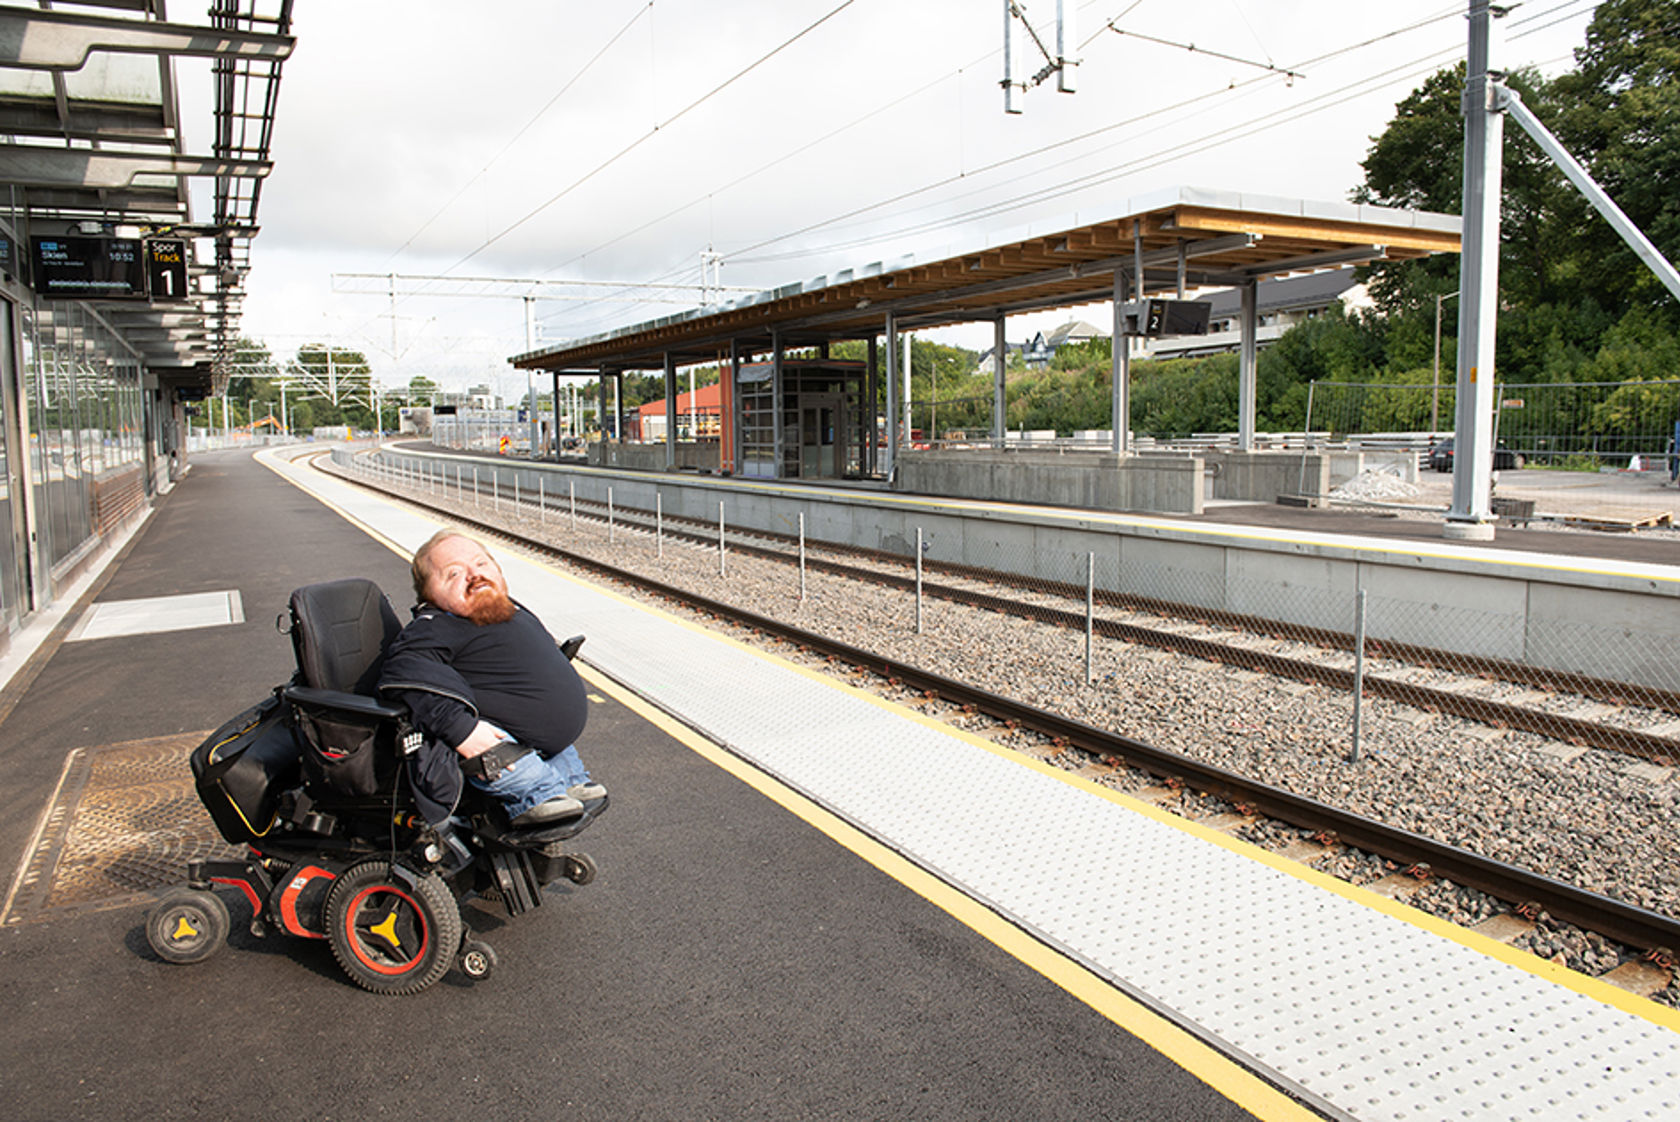 Mann i rullestol på stasjon